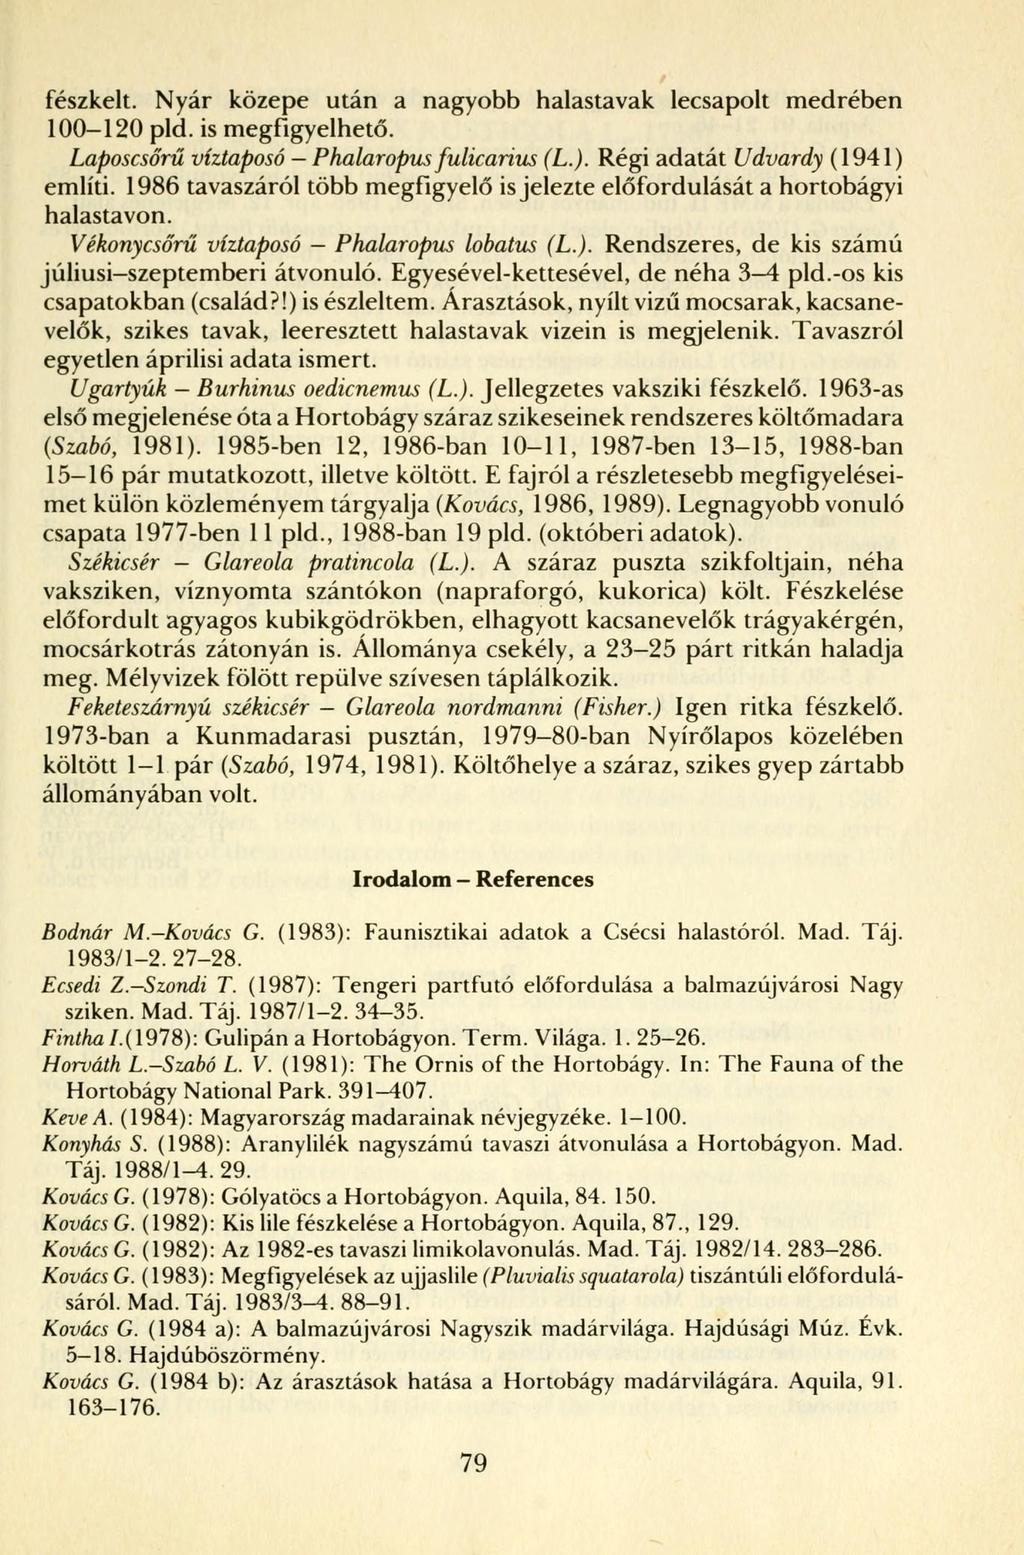 fészkelt. Nyár közepe után a nagyobb halastavak lecsapolt medrében 100-120 pld. is megfigyelhető. Laposcsőrű víztaposó - Phalaropus fulicarius (L.). Régi adatát Udvardy (1941) említi.